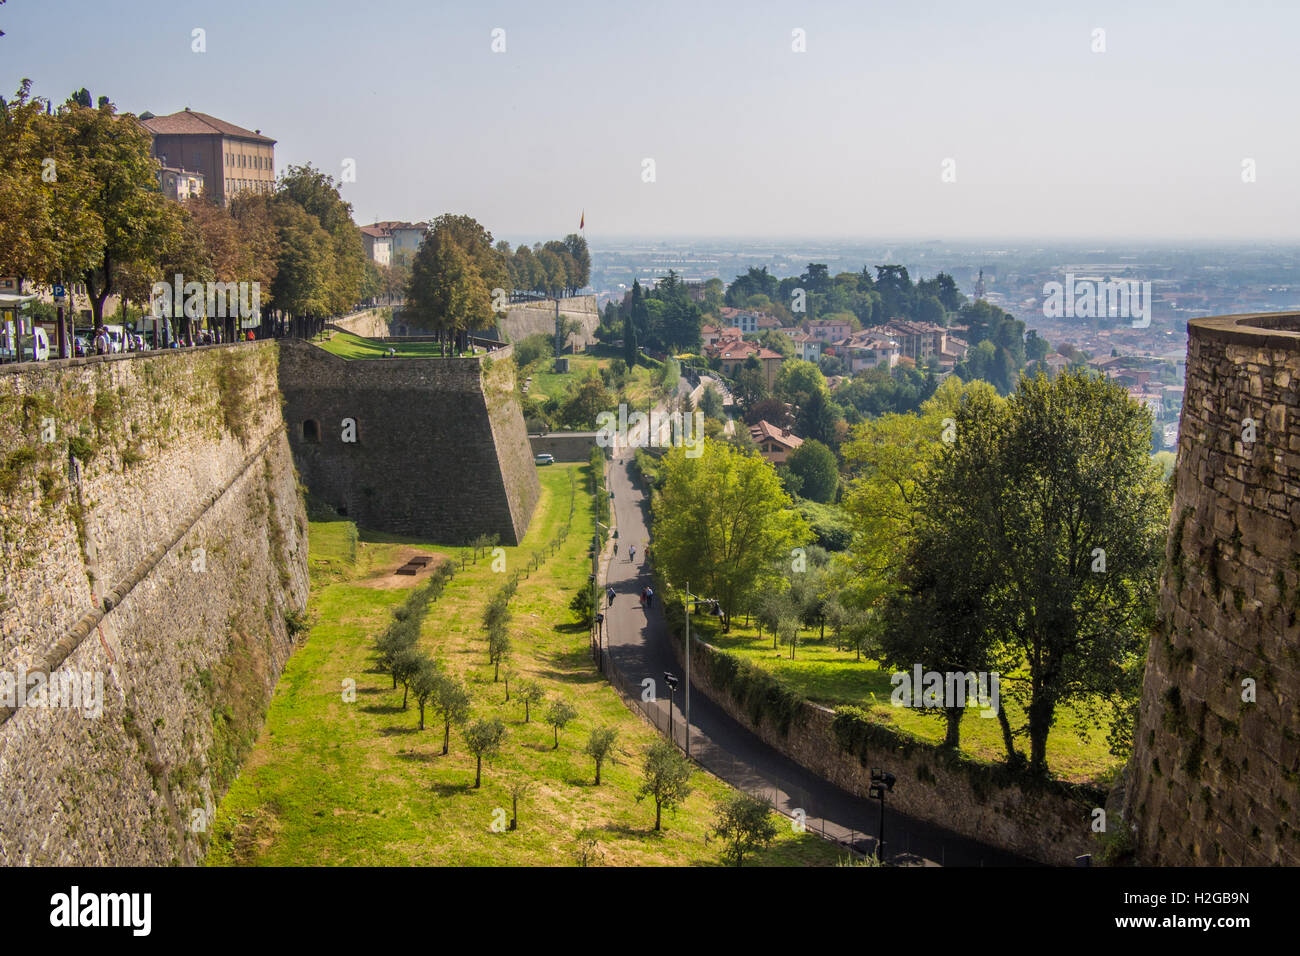 Bergamo alta mura immagini e fotografie stock ad alta risoluzione - Alamy